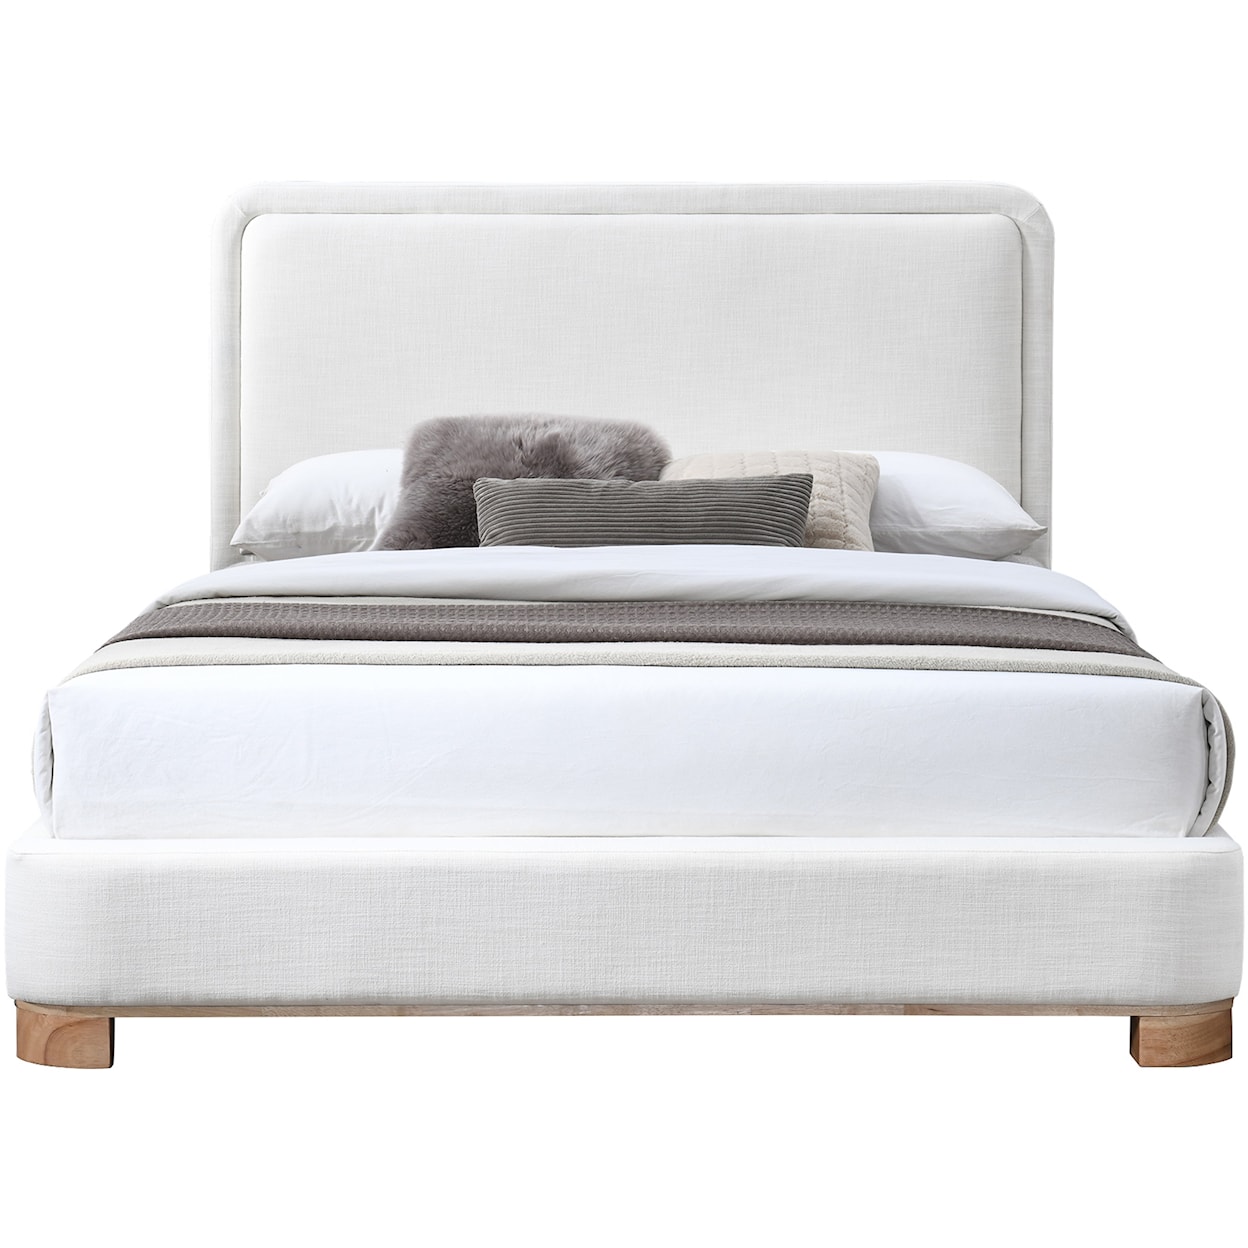 Meridian Furniture Nolita Full Bed